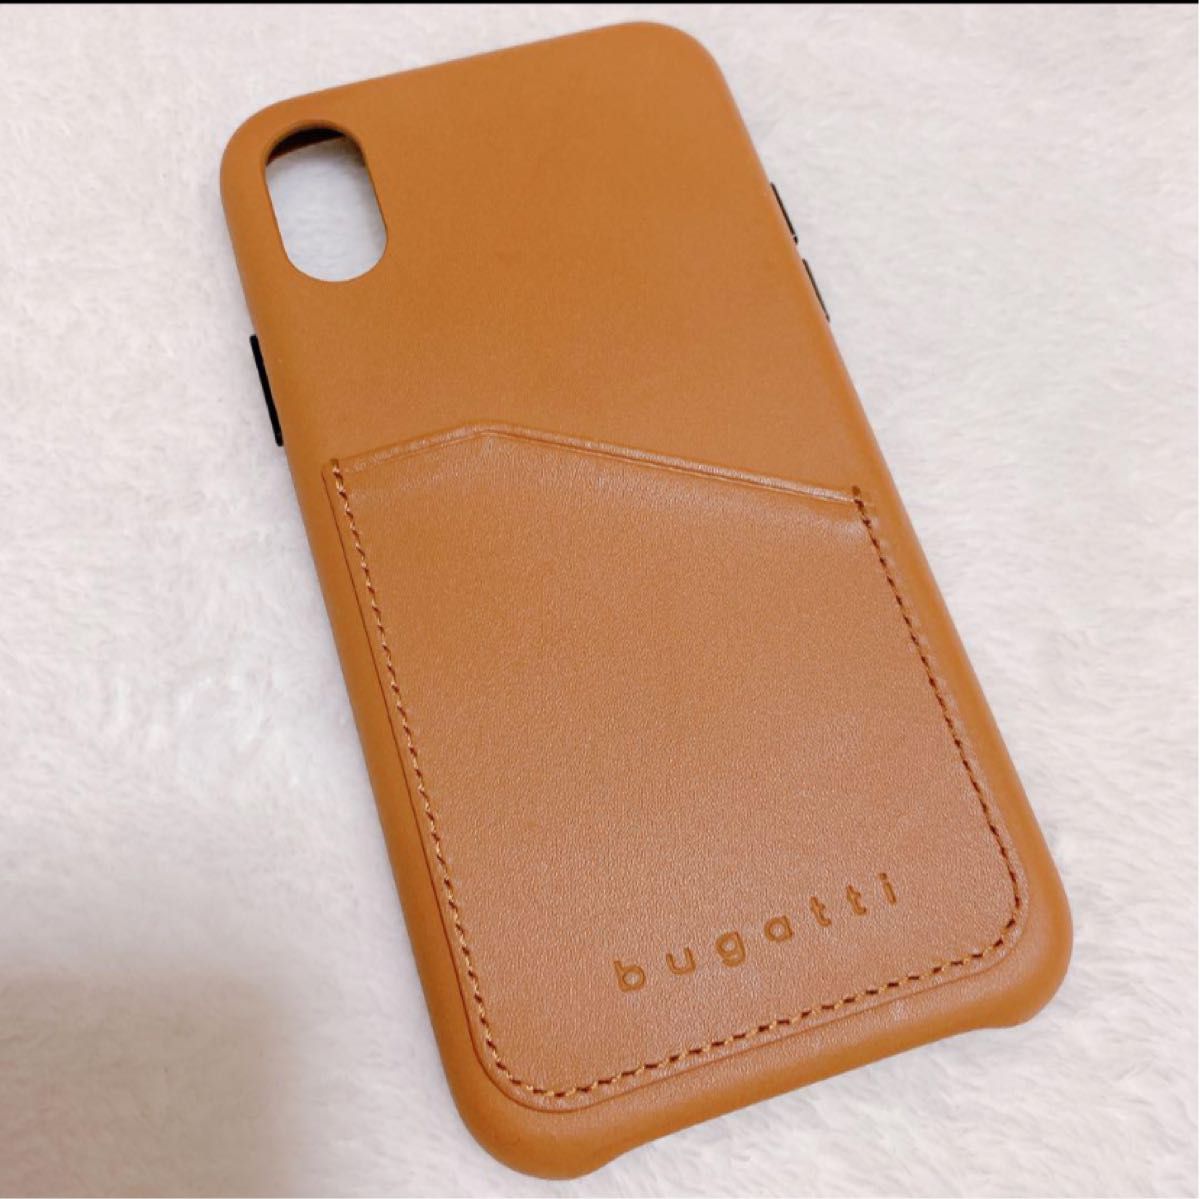 【bugatti】 iPhoneX XSケース 本革 牛革  レザーカバー ブラウン